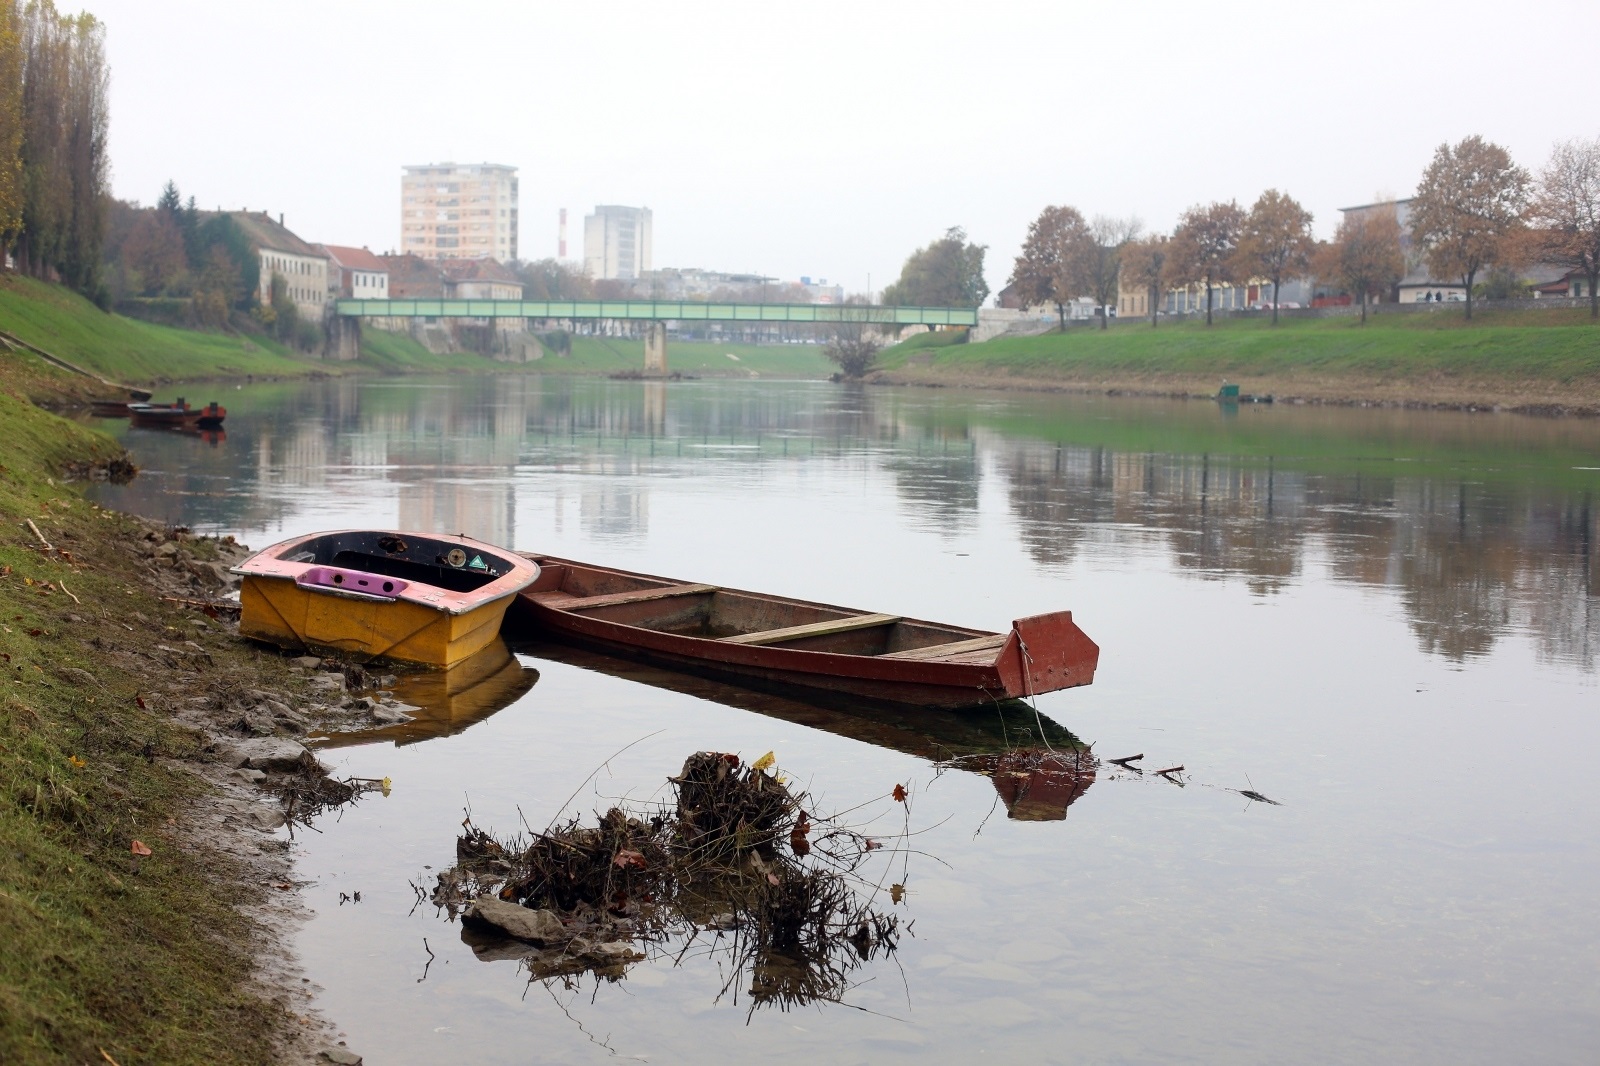 13.11.2020., Karlovac - Tmurno i oblacno prijepodne uz rijeku Kupu.
Photo: Kristina Stedul Fabac/PIXSELL